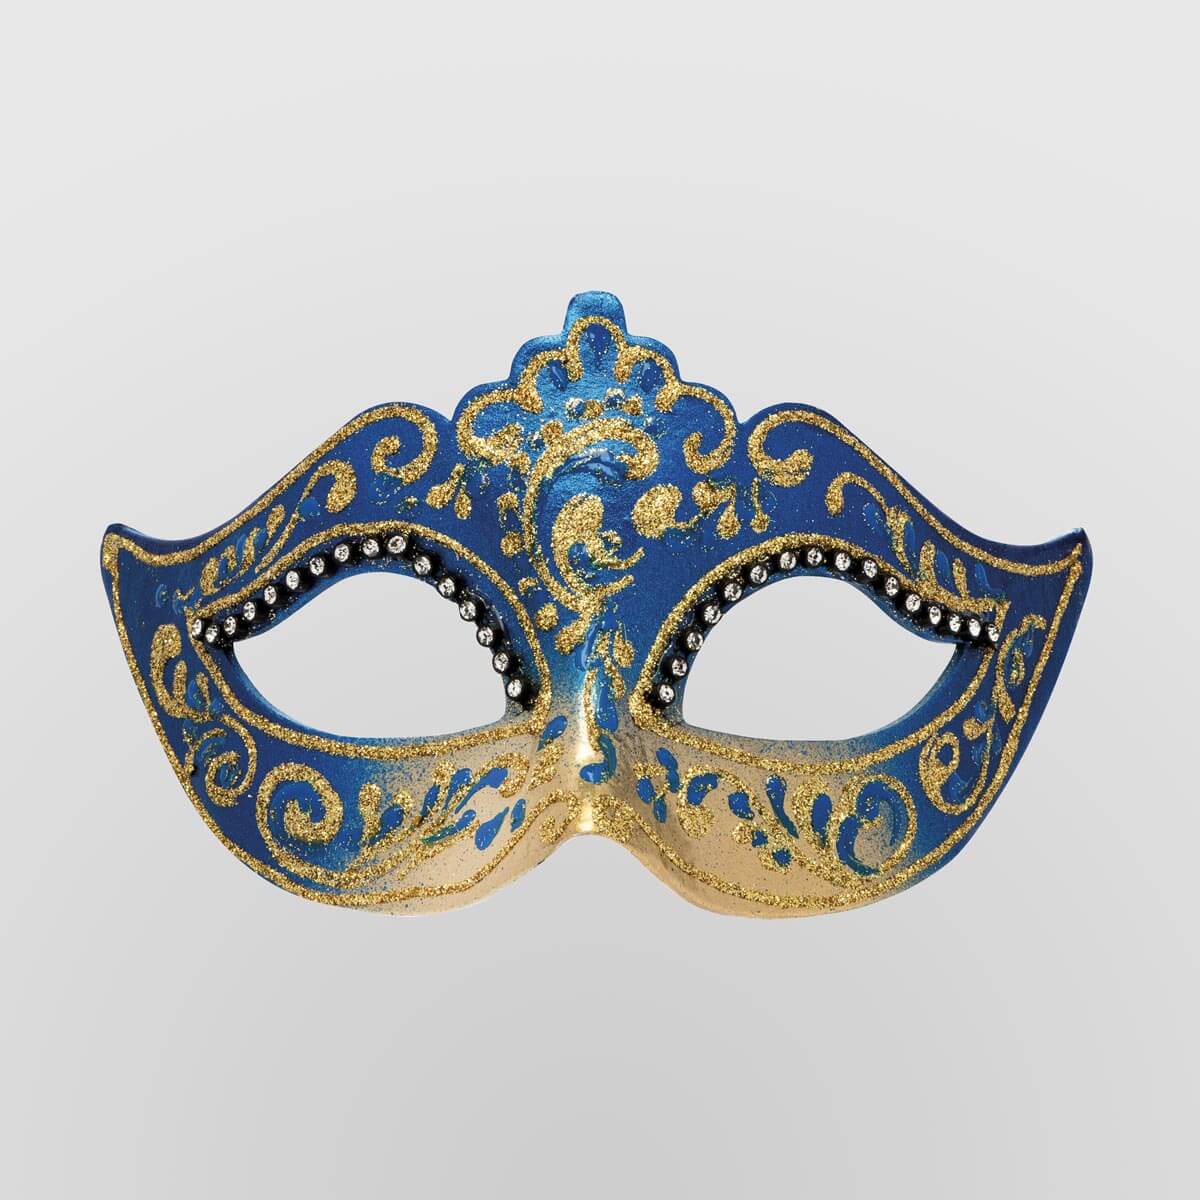 Ontmoedigd zijn pot Bezighouden Papier-Mache Masks | Venetian Masks Online Shop | 100% Made in Italy